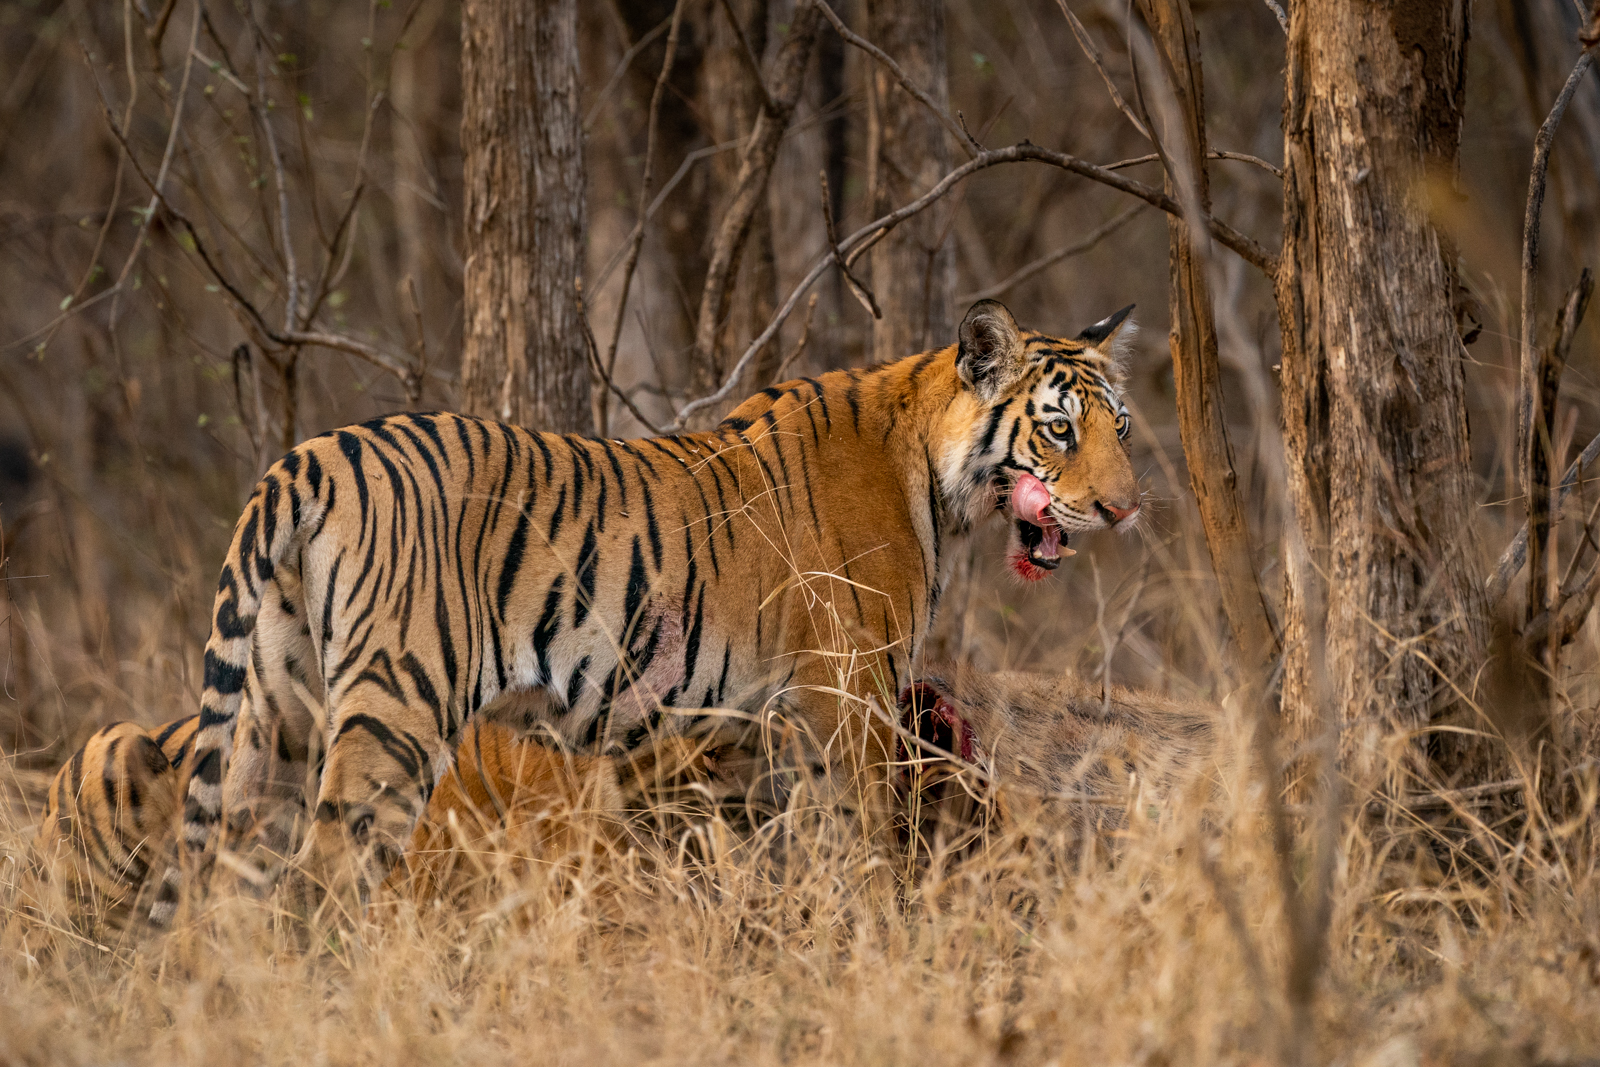 Tiger Feeding on Kill